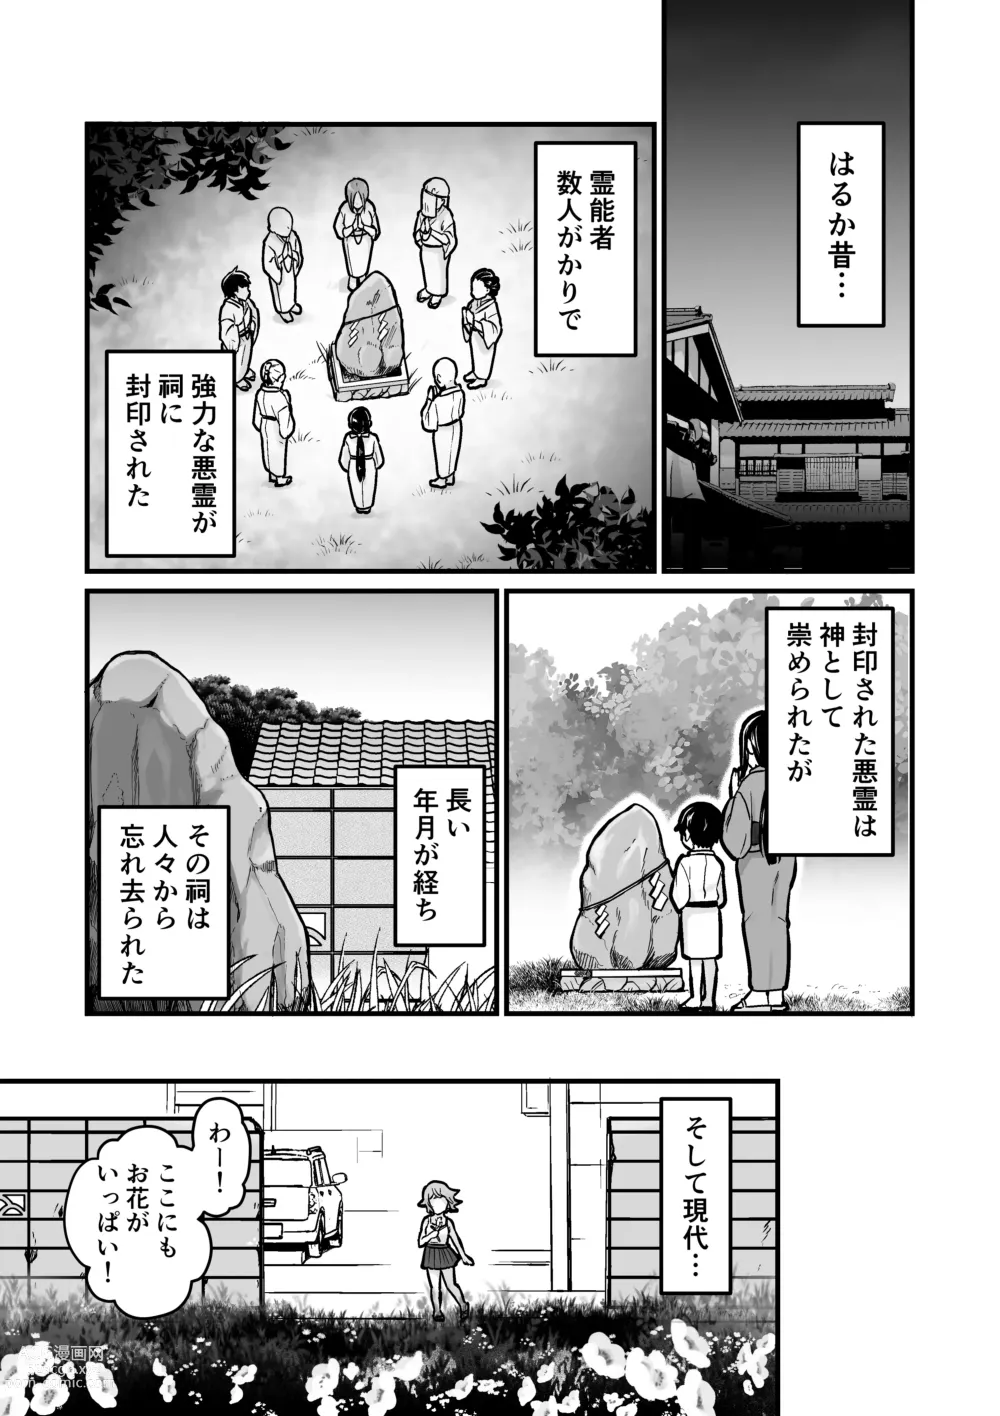 Page 2 of doujinshi Akuryo no jutai